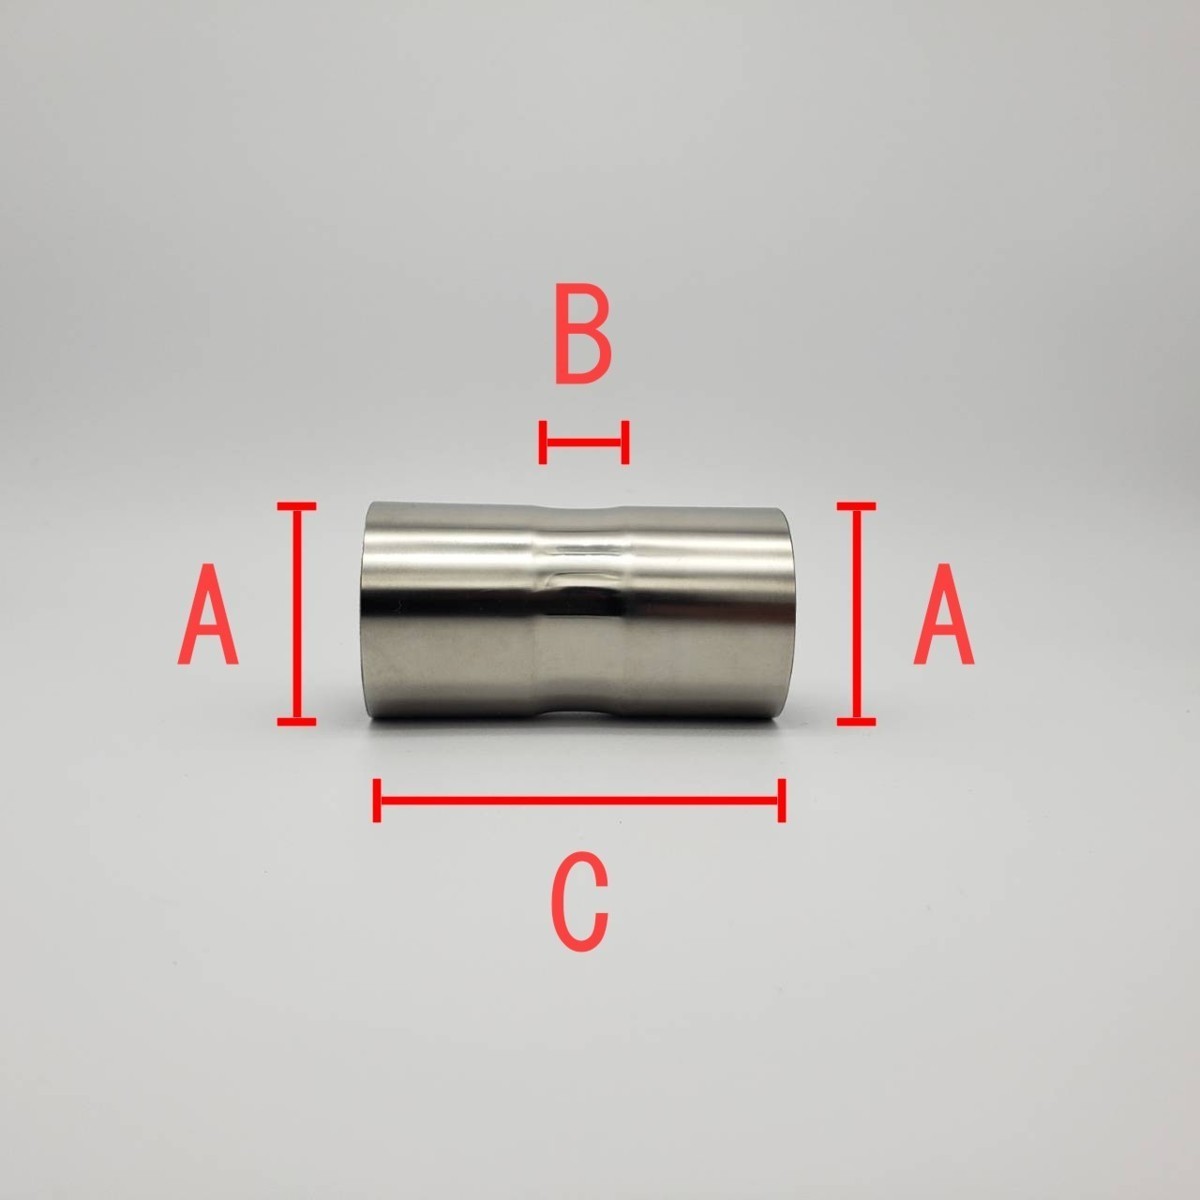  joint труба 50.8φ обе стороны разница включено удлинение нержавеющая сталь новый товар 